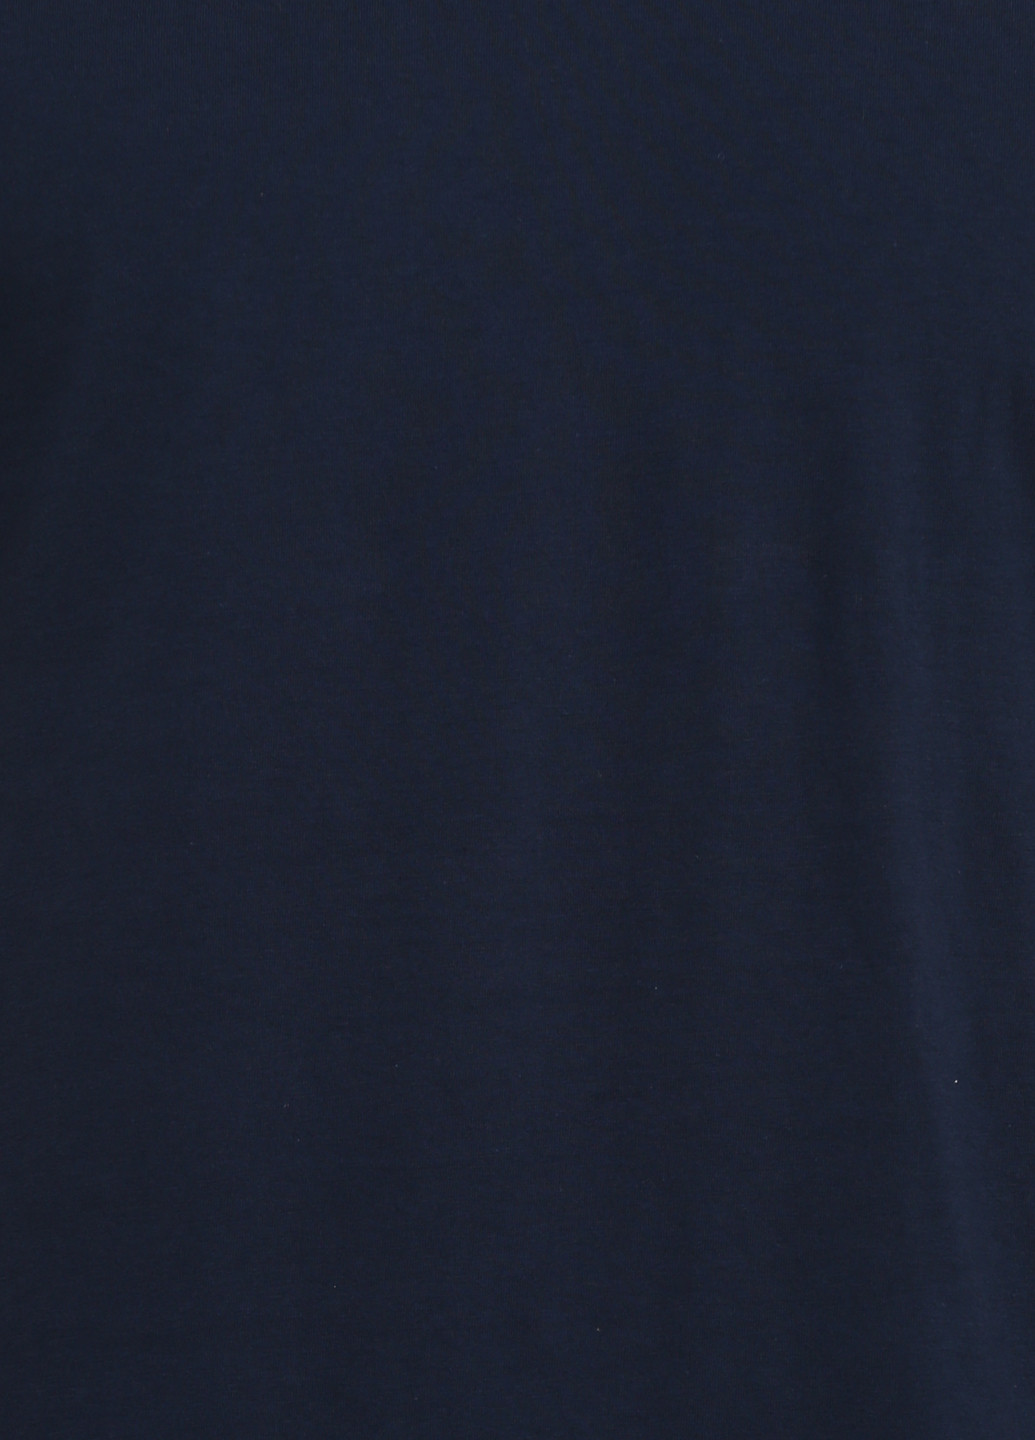 Темно-синяя футболка Levi's